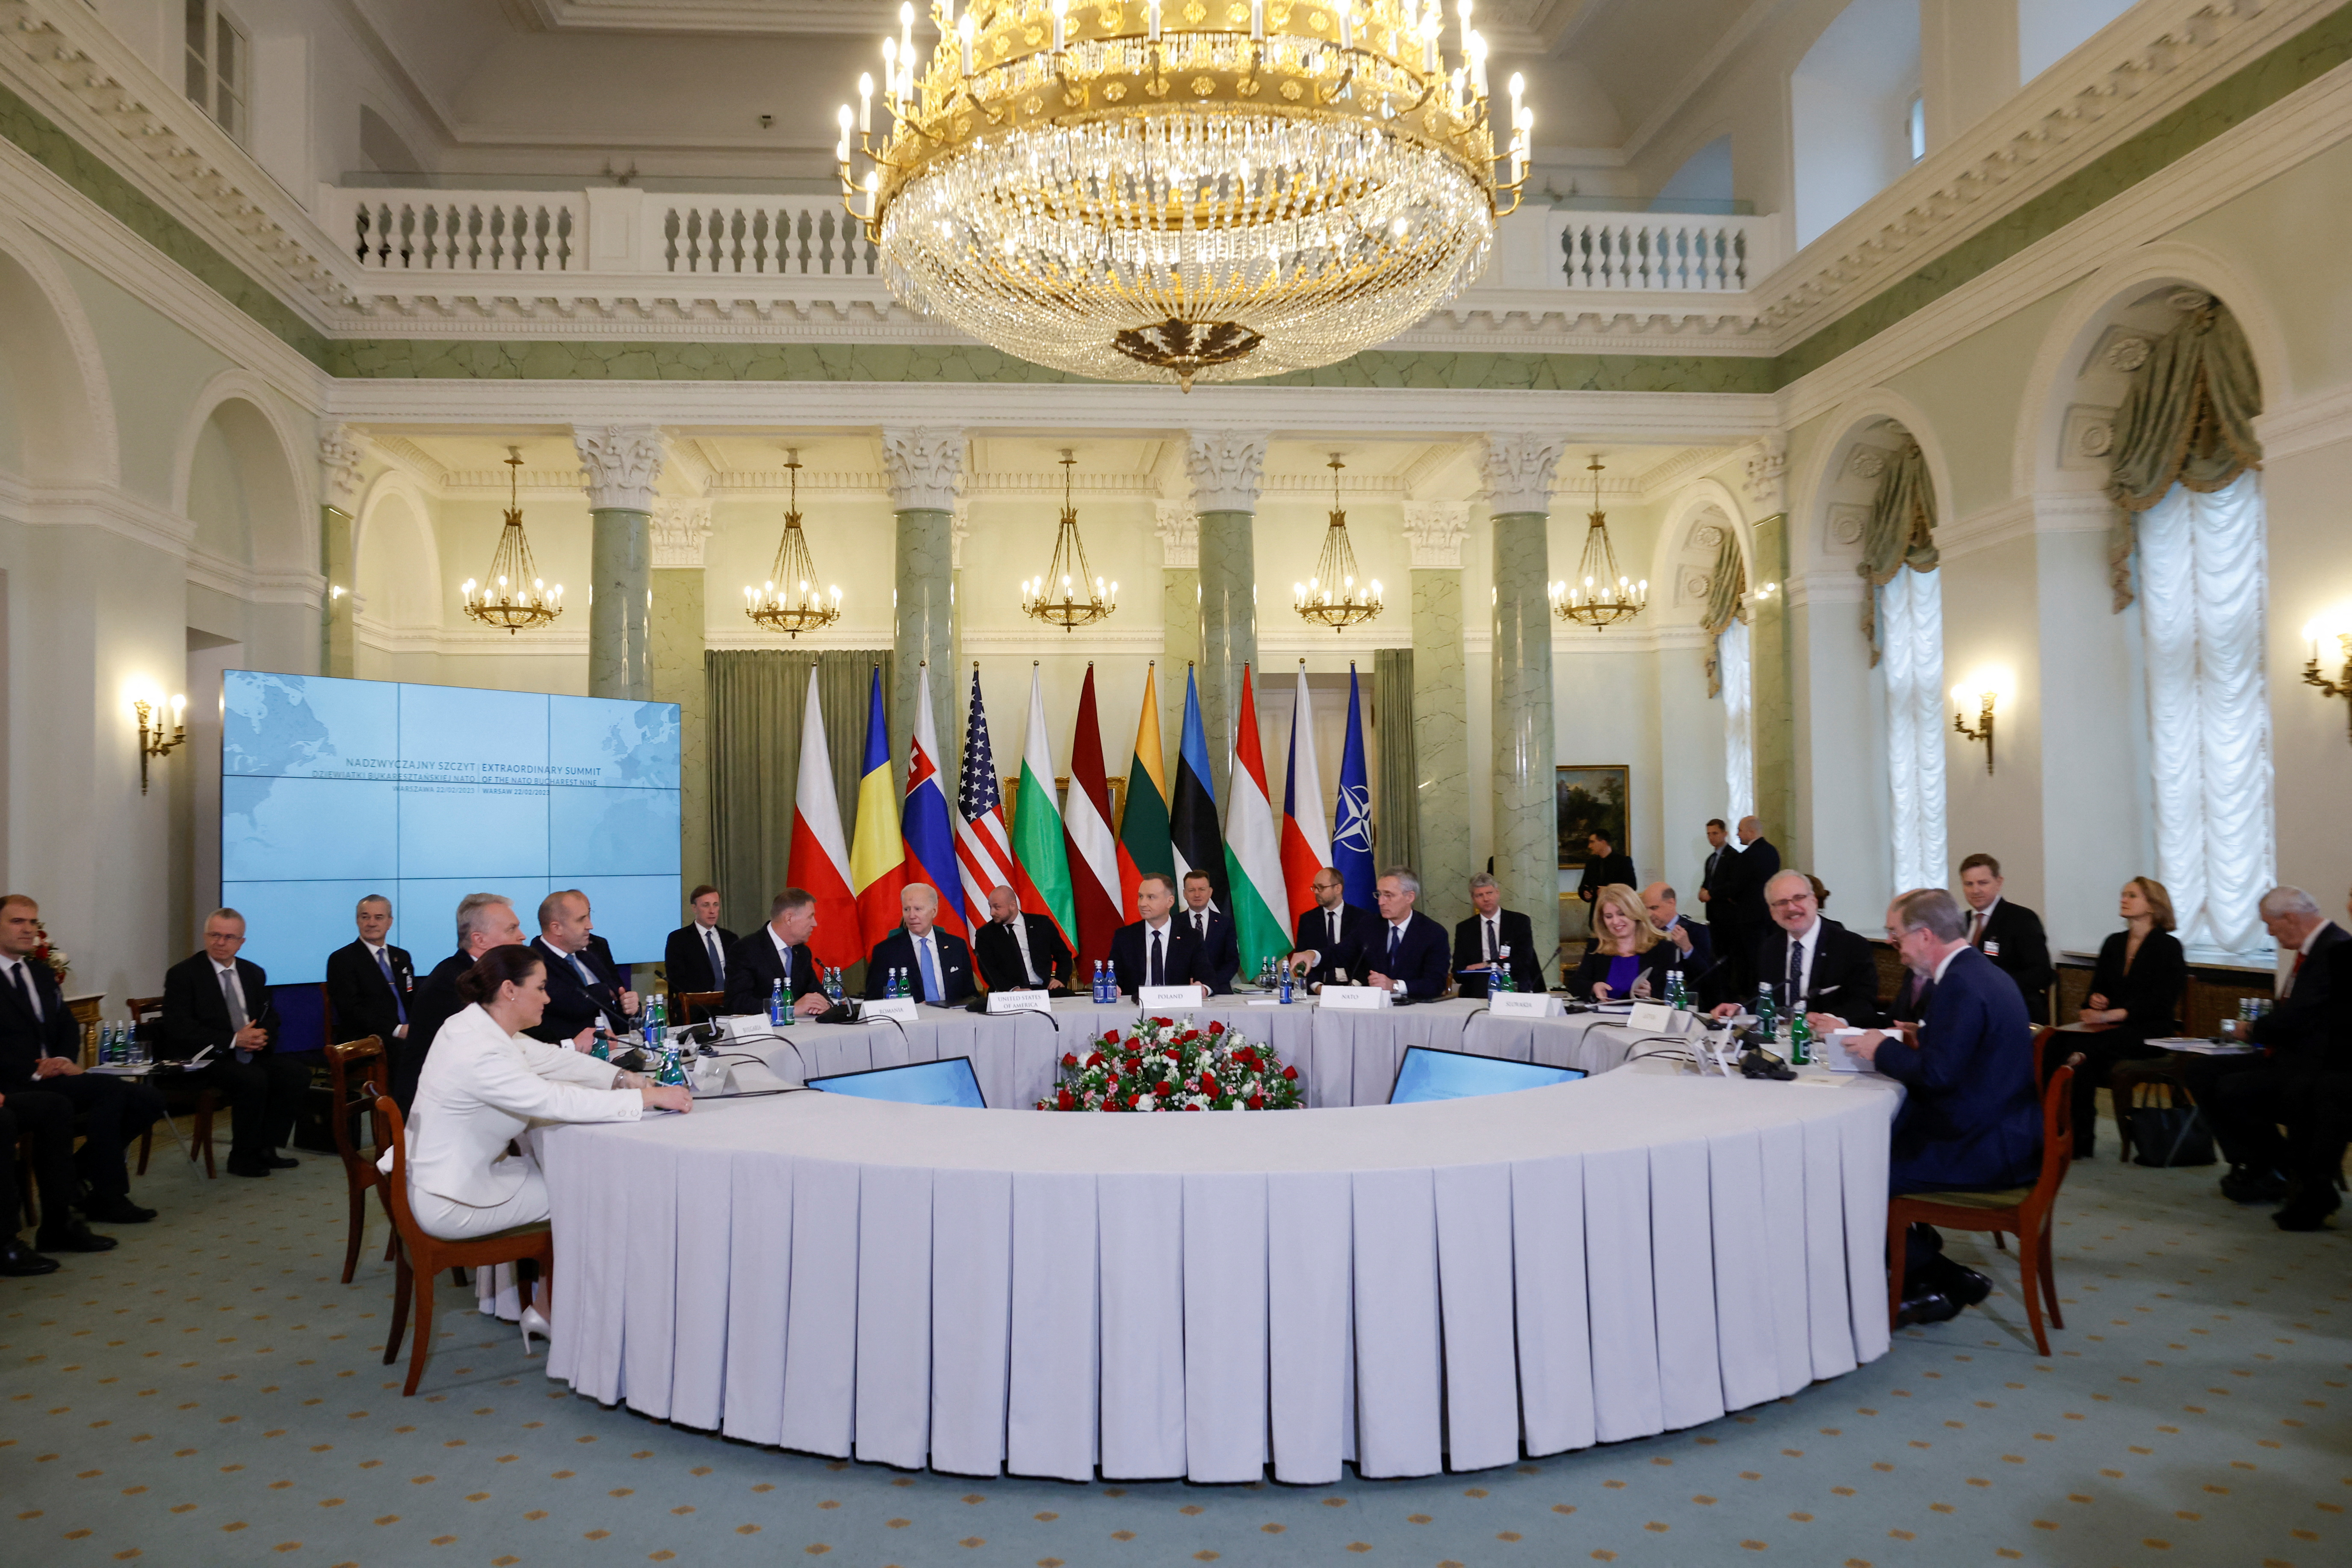 NATO Bucharest Nine (B9) Summit in Warsaw